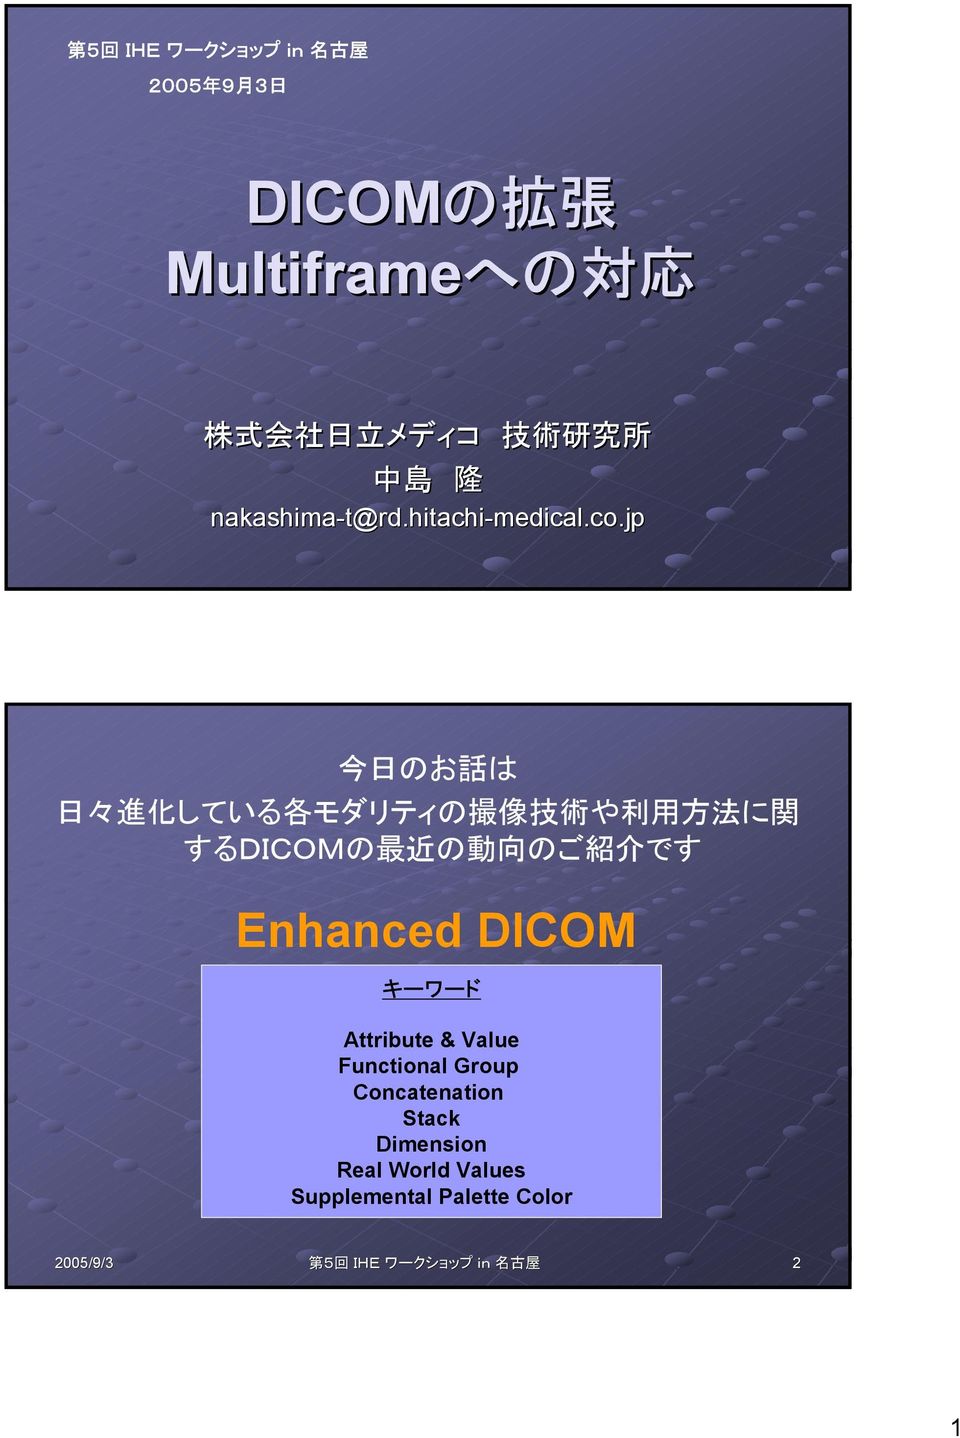 jp 今 日 のお 話 は 日 々 進 化 している 各 モダリティの 撮 像 技 術 や 利 用 方 法 に 関 するDICOMの 最 近 の 動 向 のご 紹 介 です